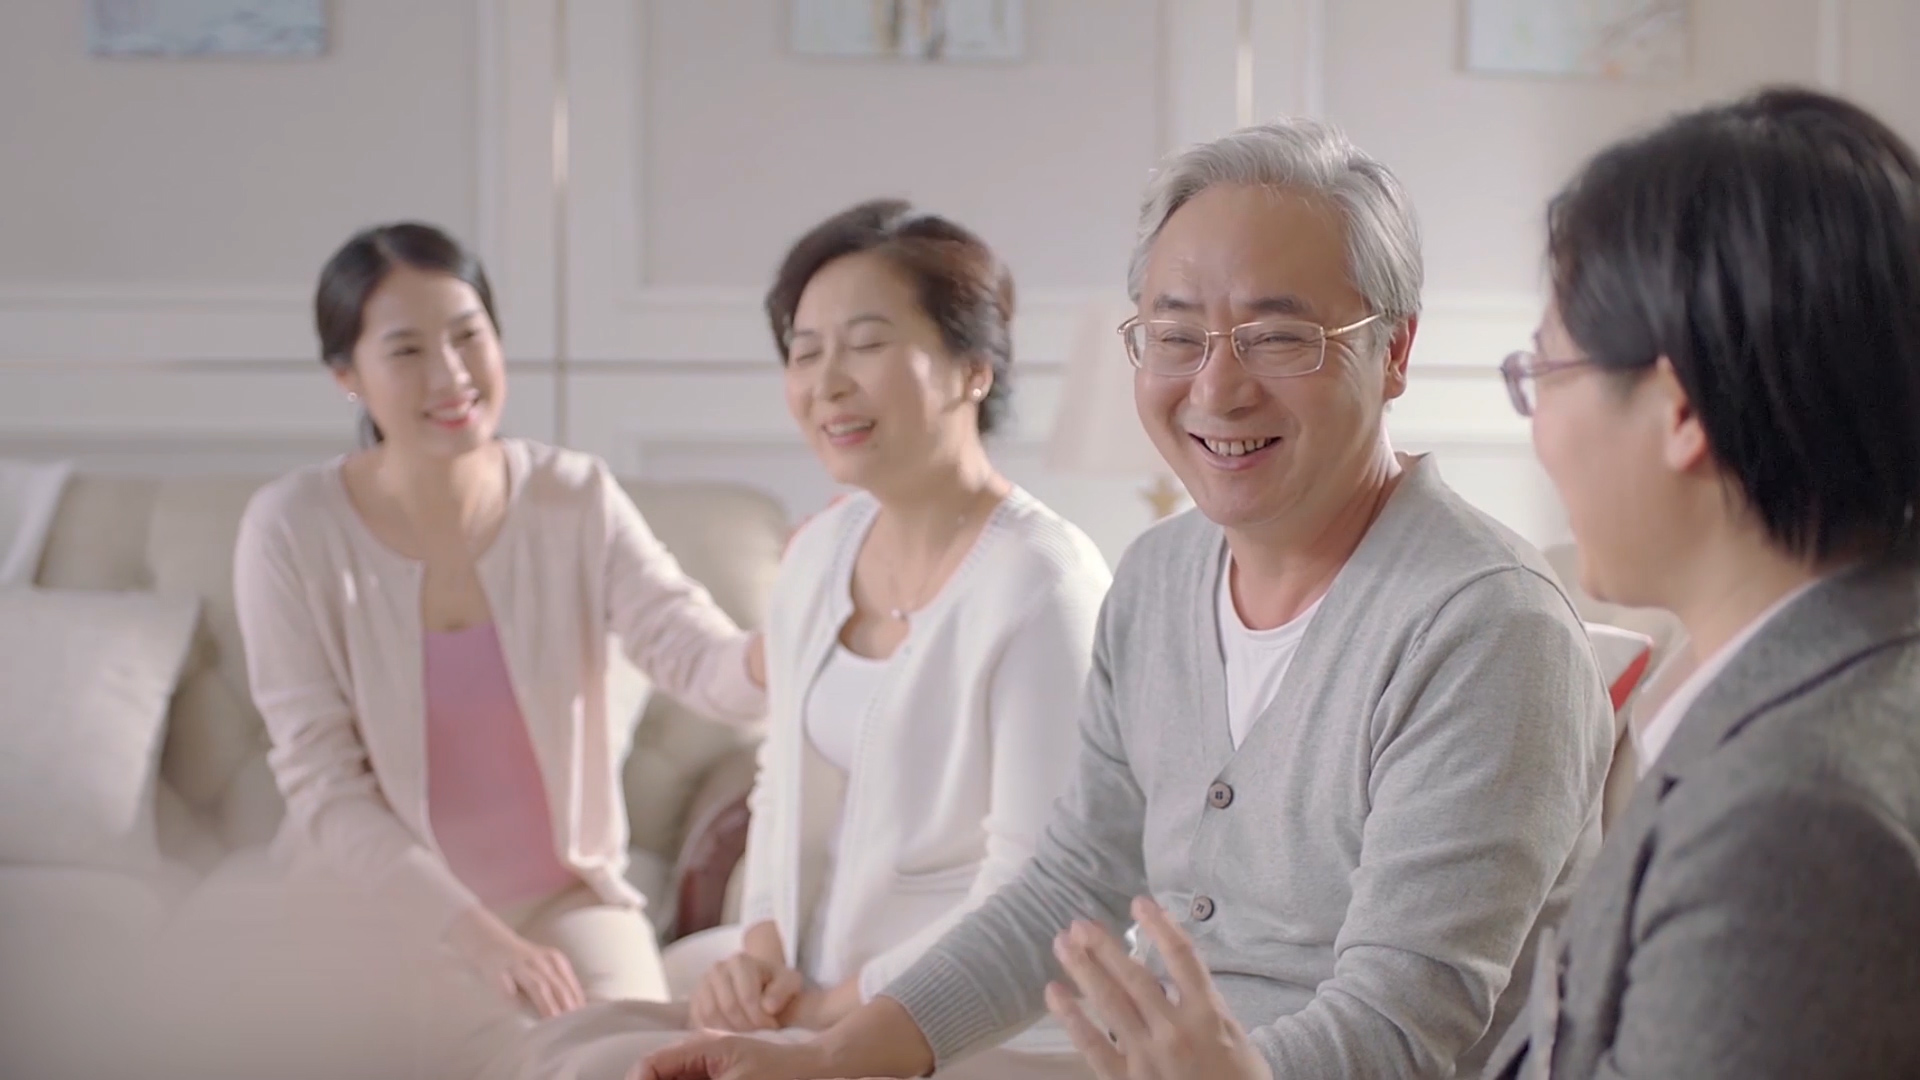 郑州专业视频制作公司拍摄医疗健康行业的宣传片有哪些特点